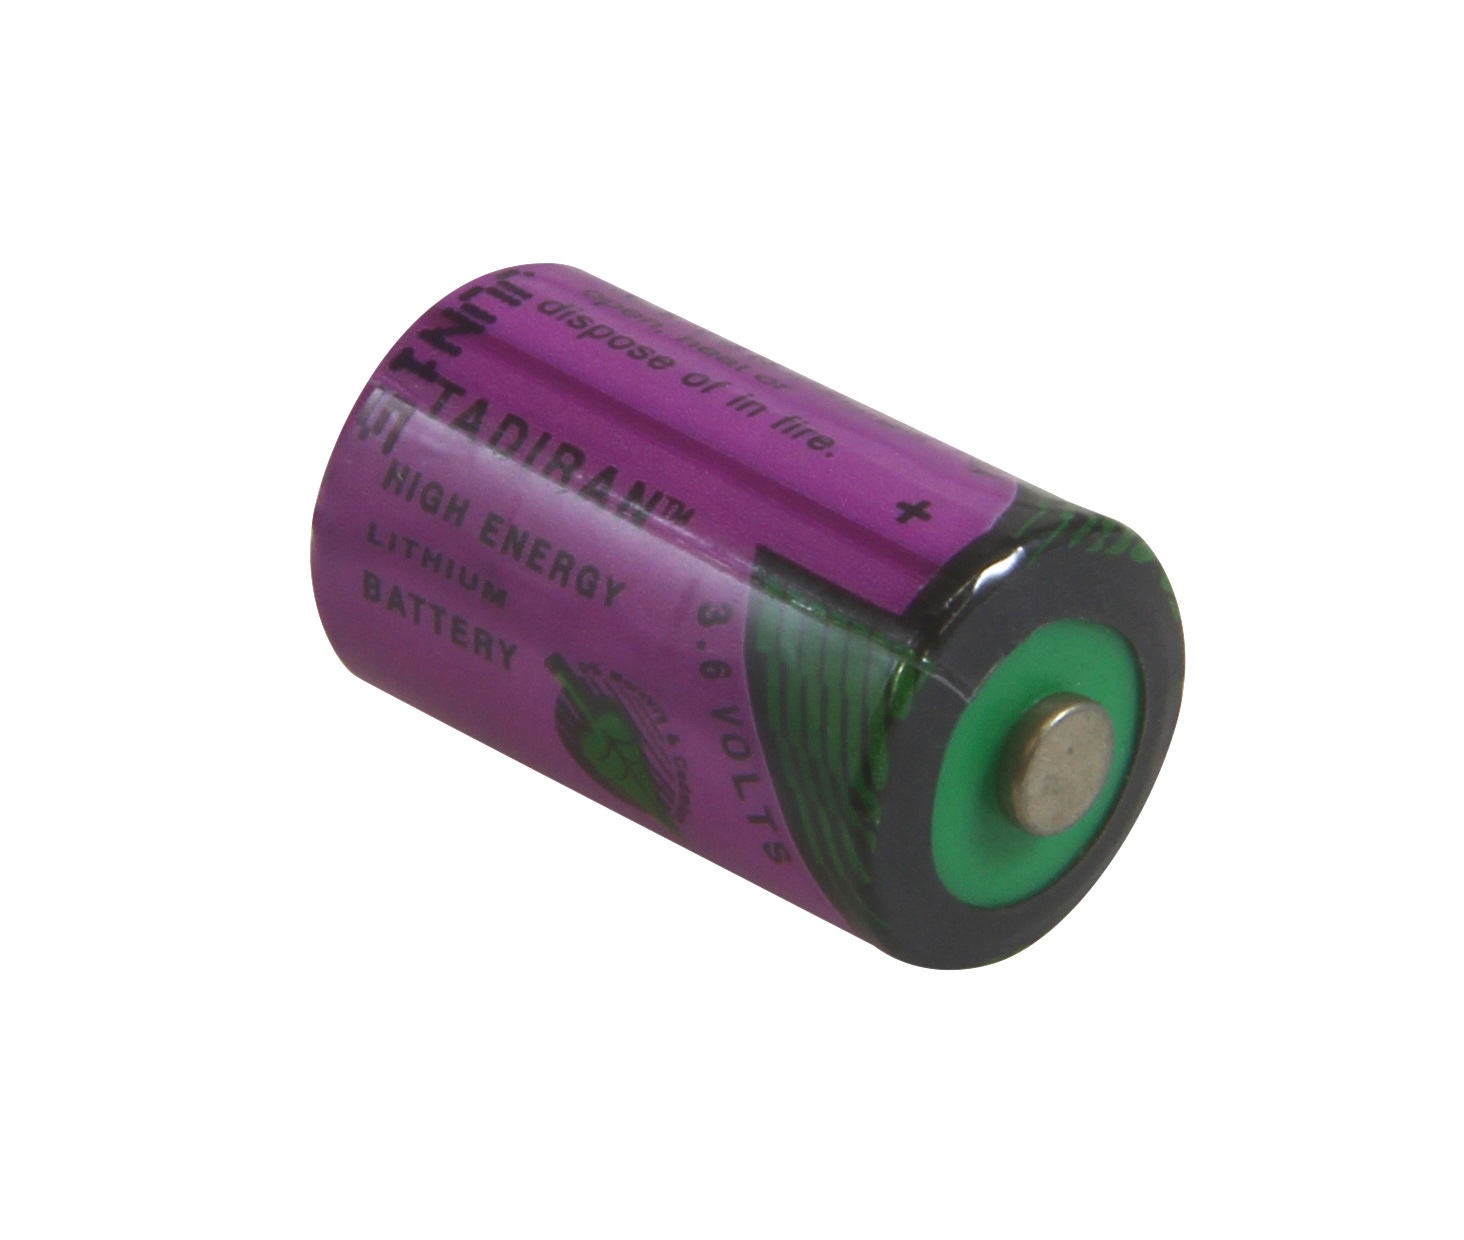 Tadiran Sonnenschein lithium battery SL750S 1/2 AA 